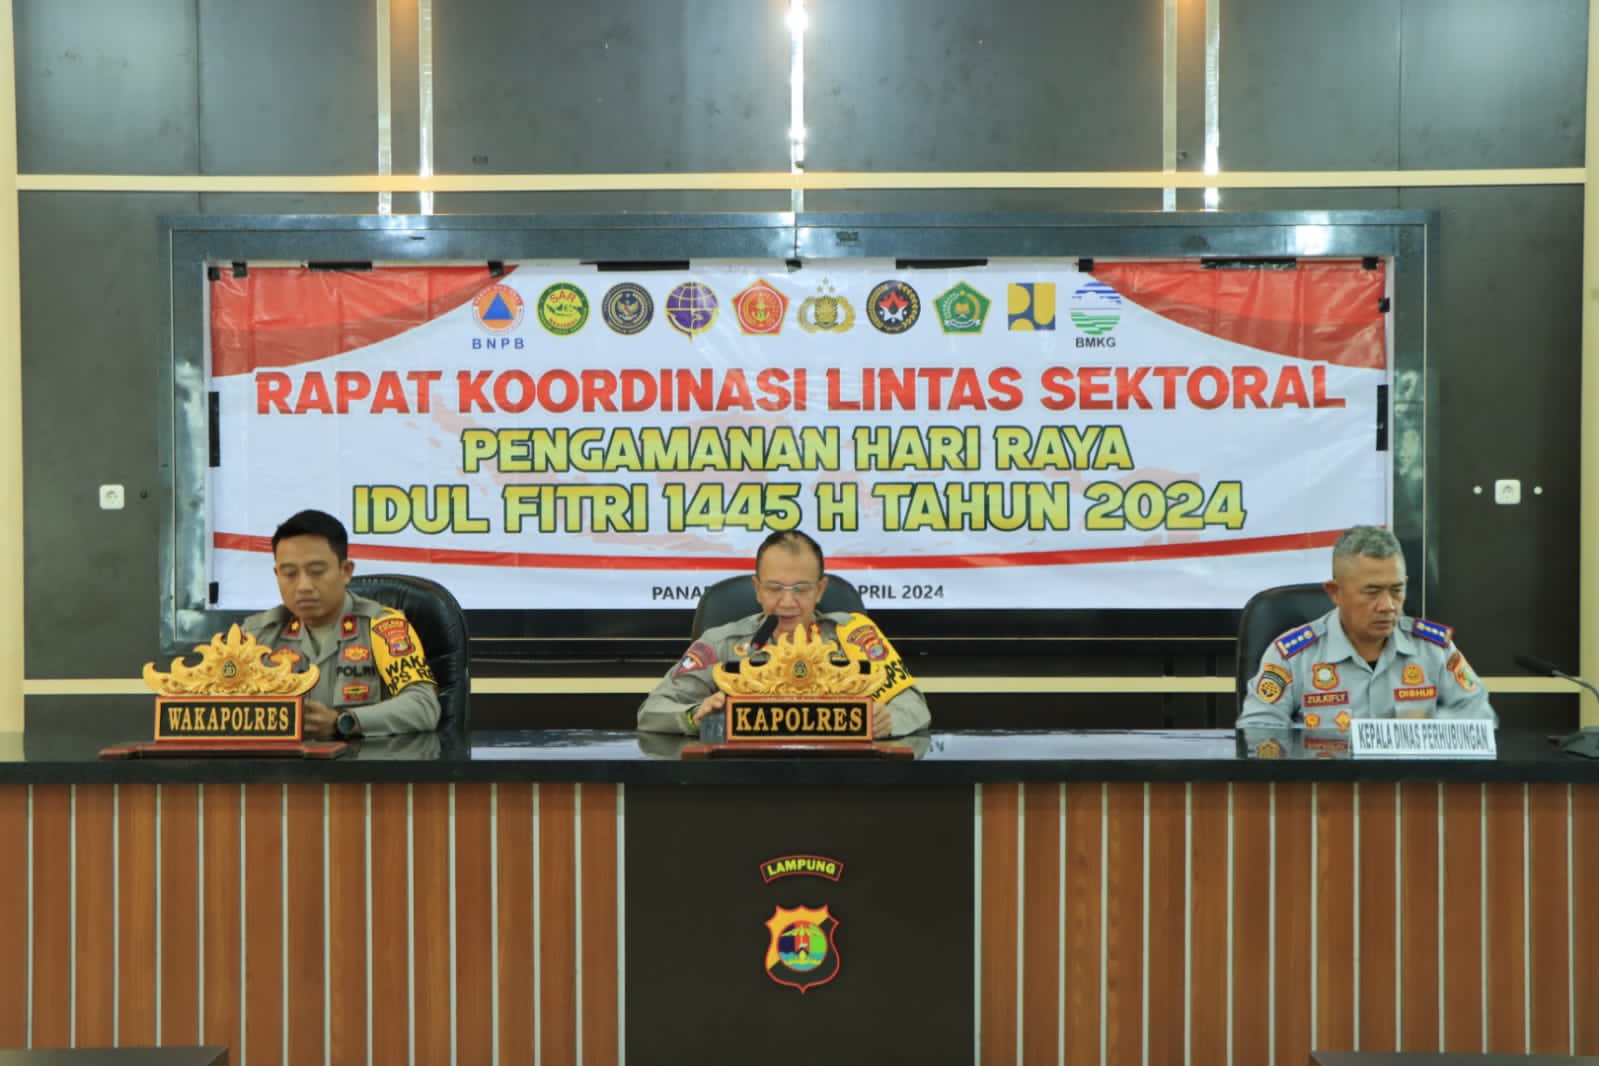 Rakor Lintas Sektoral Ops Ketupat Krakatau 2024 Diwilayah Kabupaten Tulang Bawang Barat